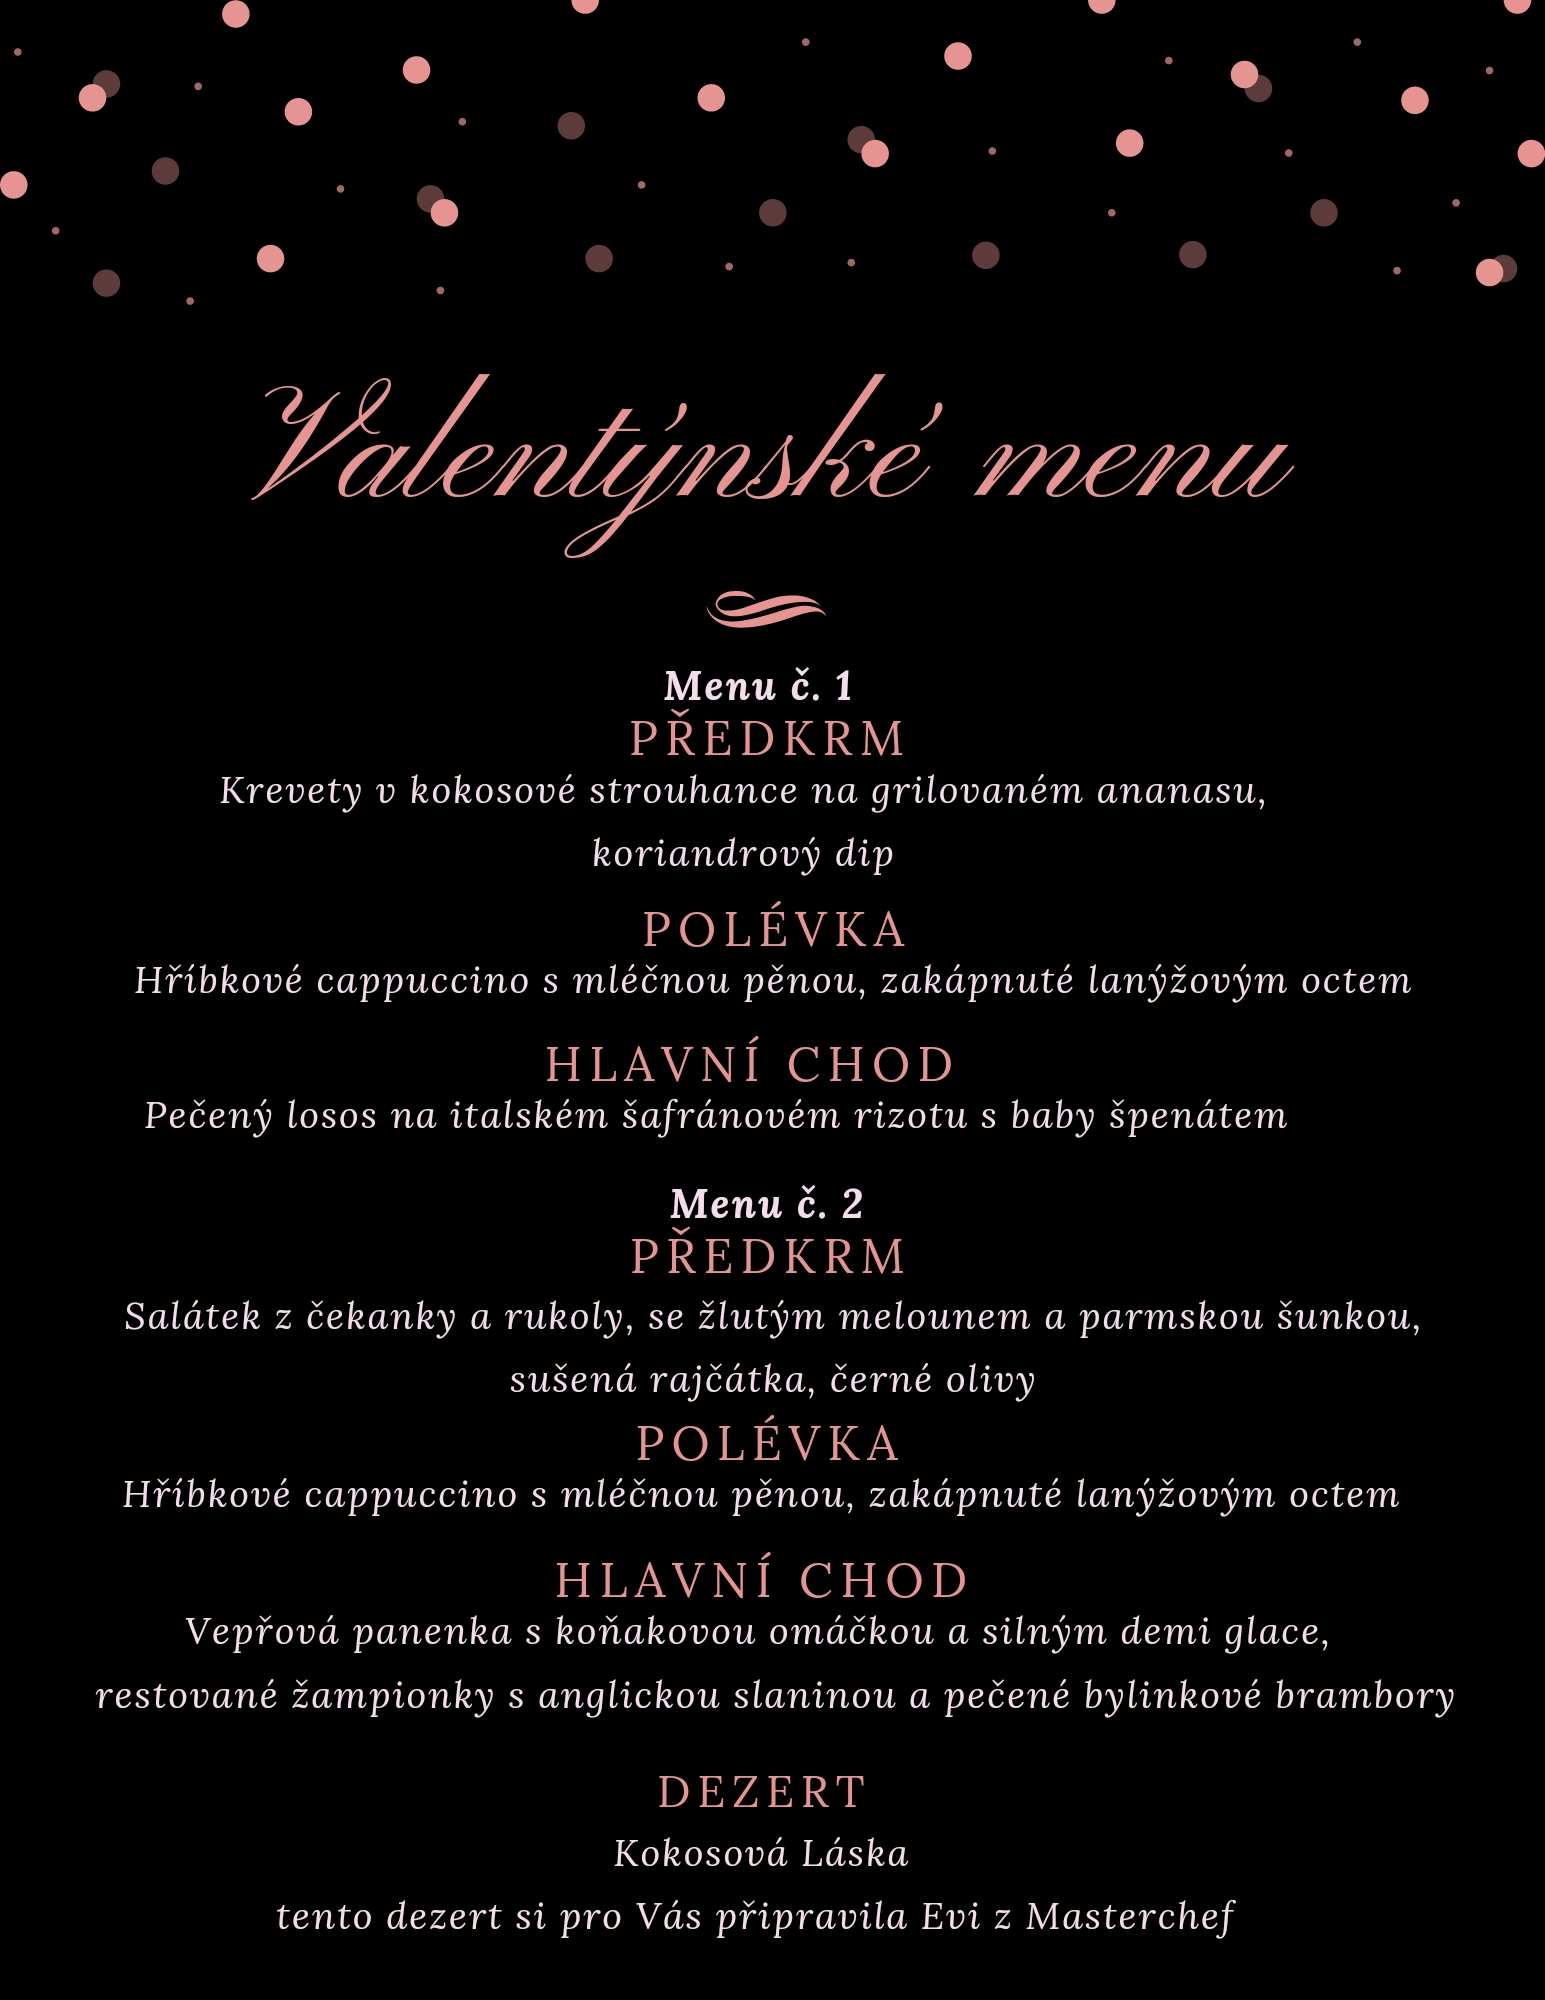 Valentýnské menu, relax